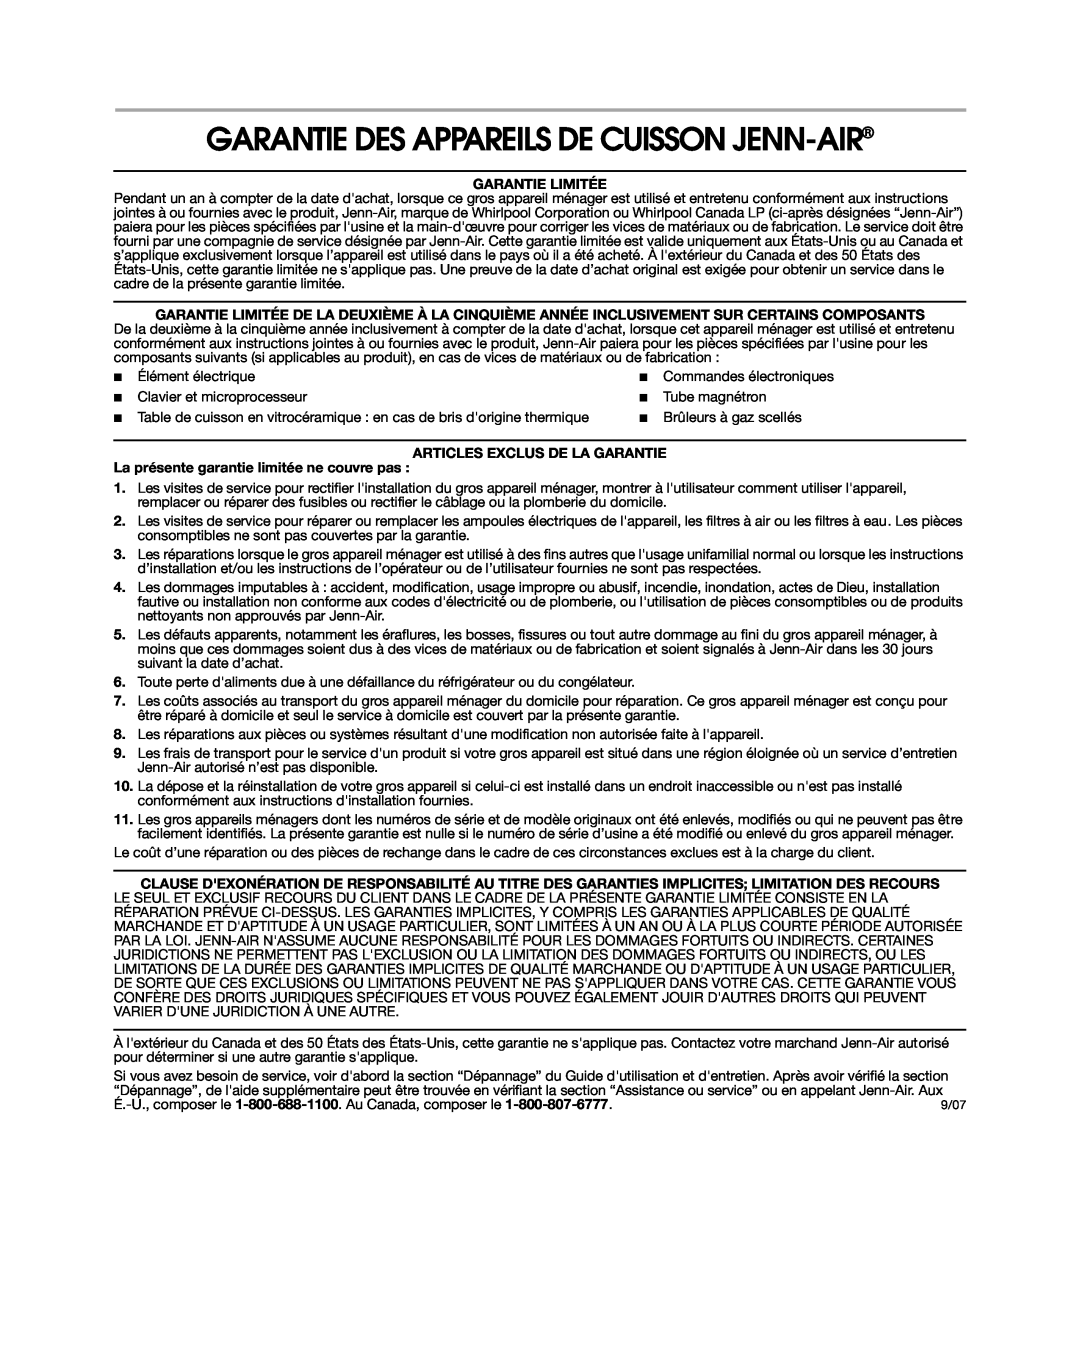 Jenn-Air 8113P754-60 Garantie Des Appareils De Cuisson Jenn-Air, Garantie Limitée, Articles Exclus De La Garantie 